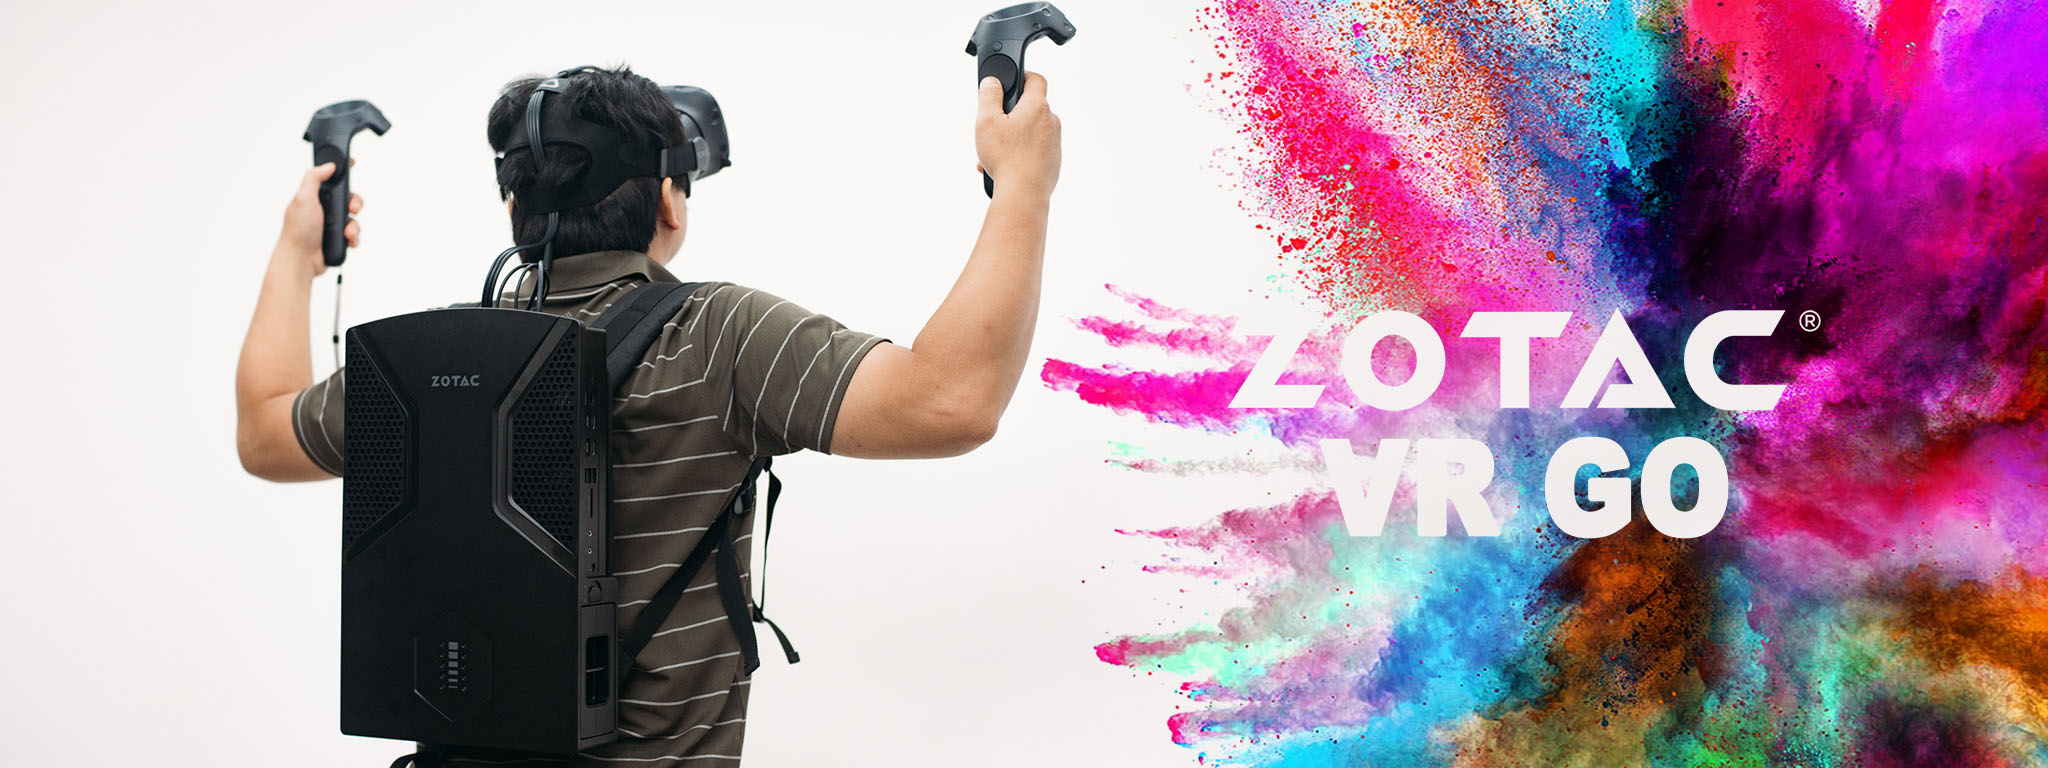 Trên tay Zotac VR Go – Cấu hình mạnh, hướng đến chơi game thực tế ảo di động